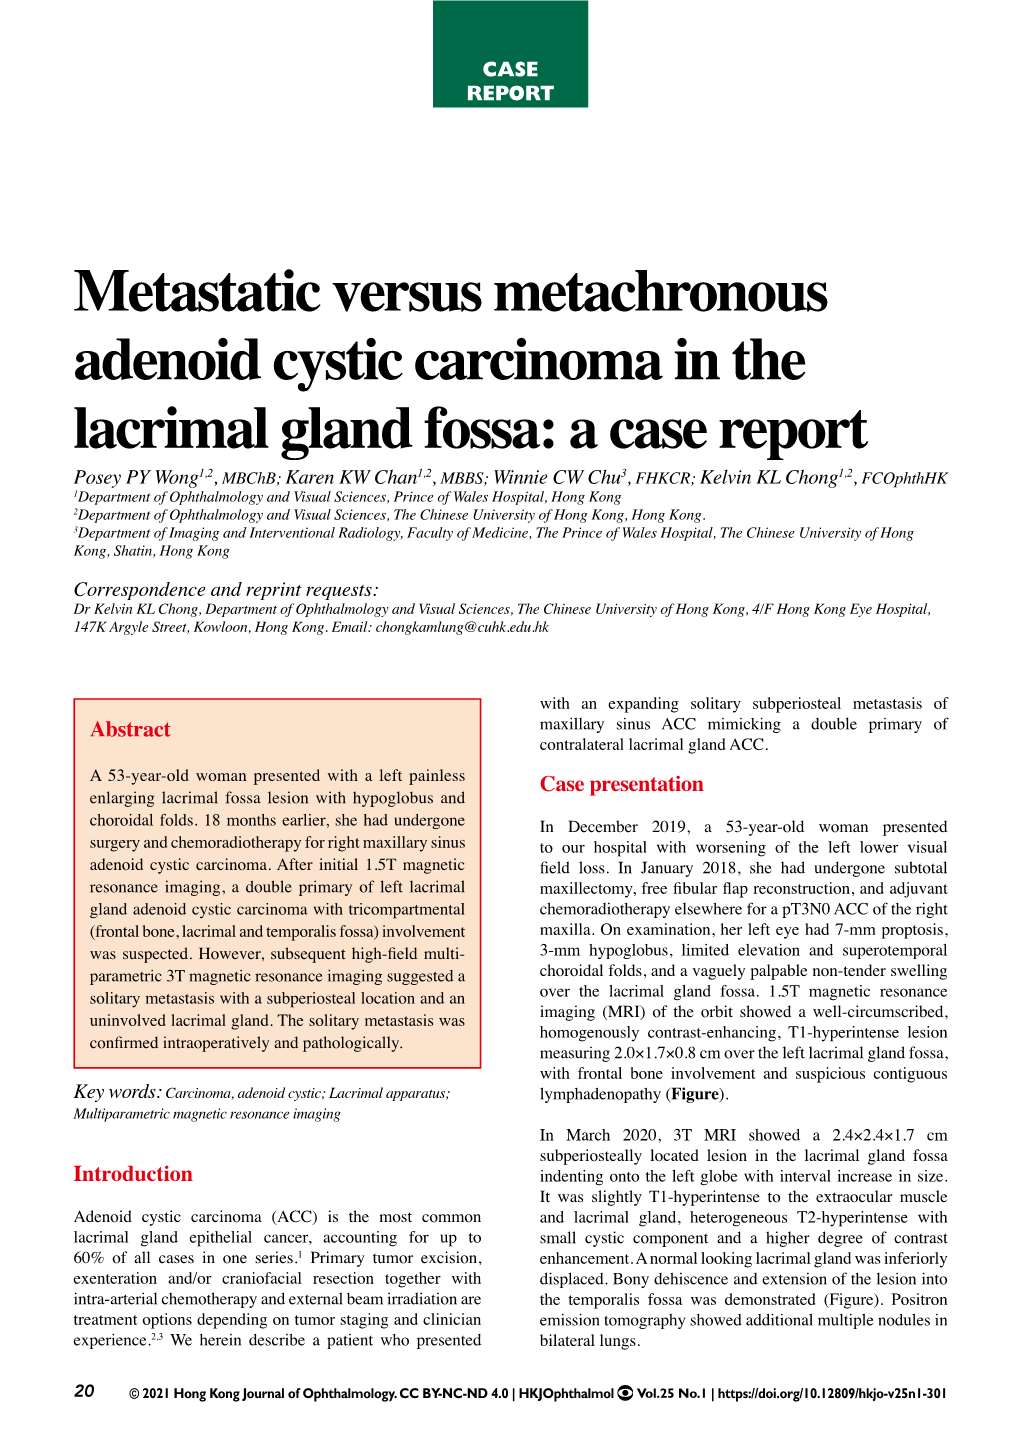 Metastatic Versus Metachronous Adenoid Cystic Carcinoma in the Lacrimal Gland Fossa